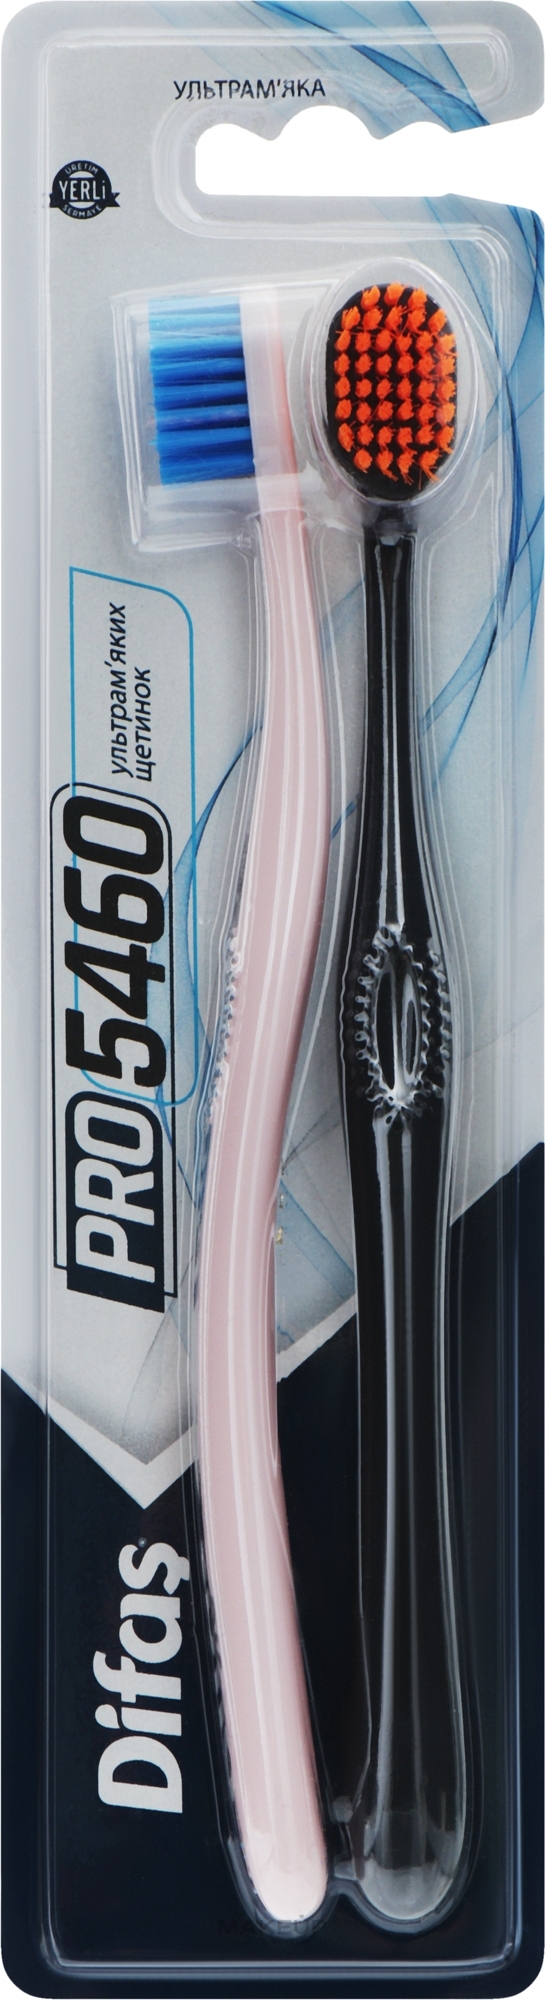 Набор зубных щеток "Ultra Soft", черная + розовая - Difas PRO 5460 — фото 2шт